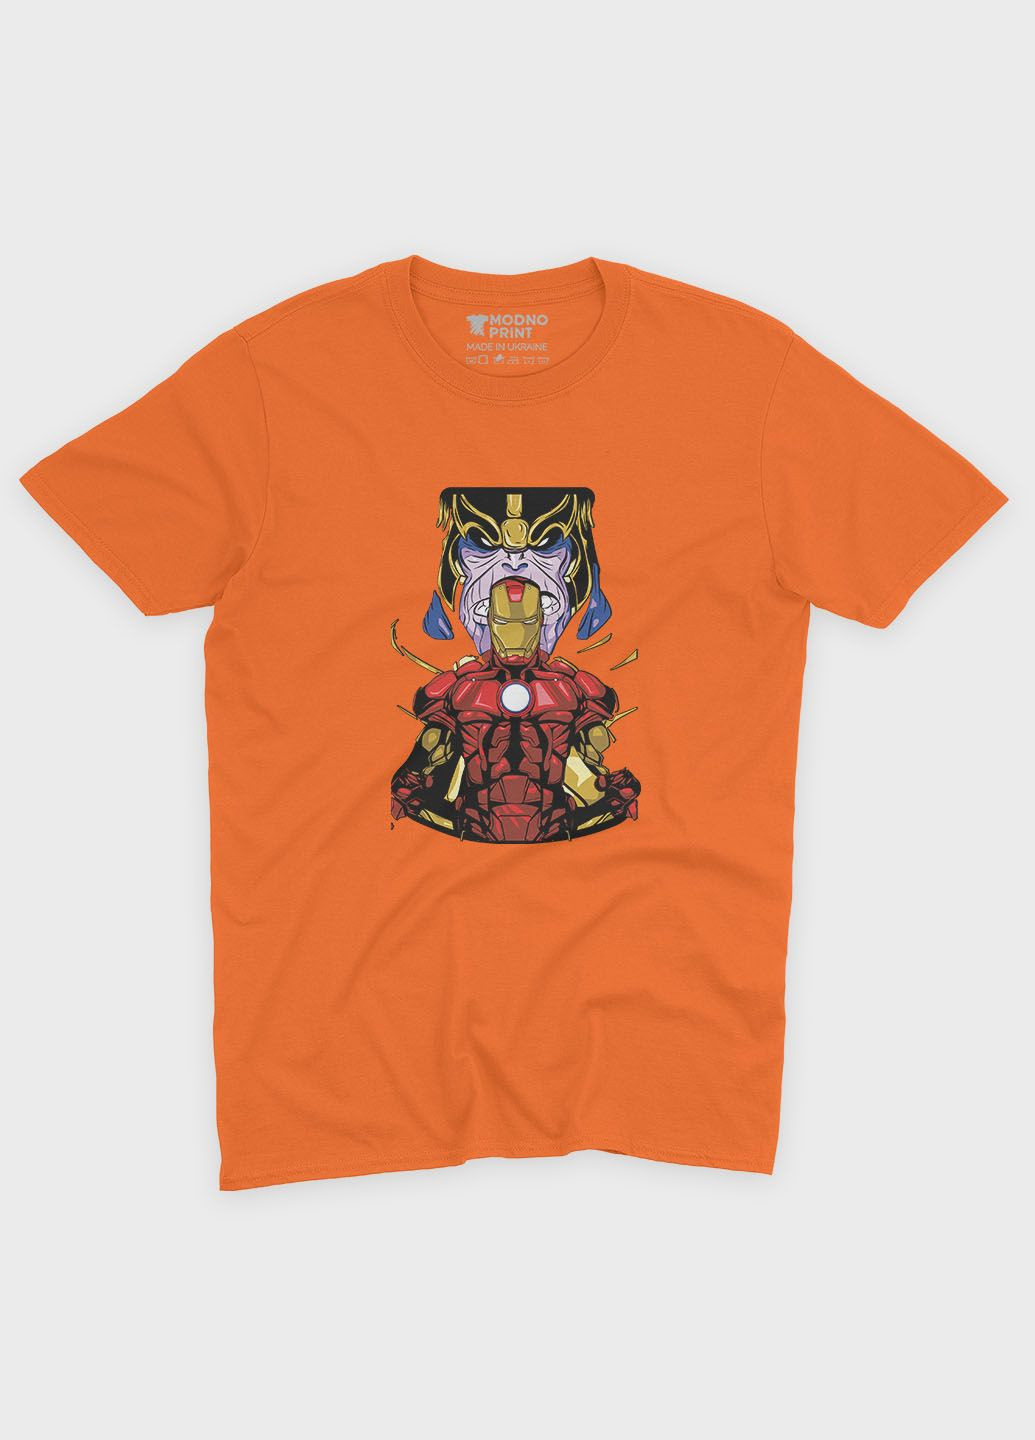 Помаранчева демісезонна футболка для хлопчика з принтом супергероя - залізна людина (ts001-1-ora-006-016-023-b) Modno